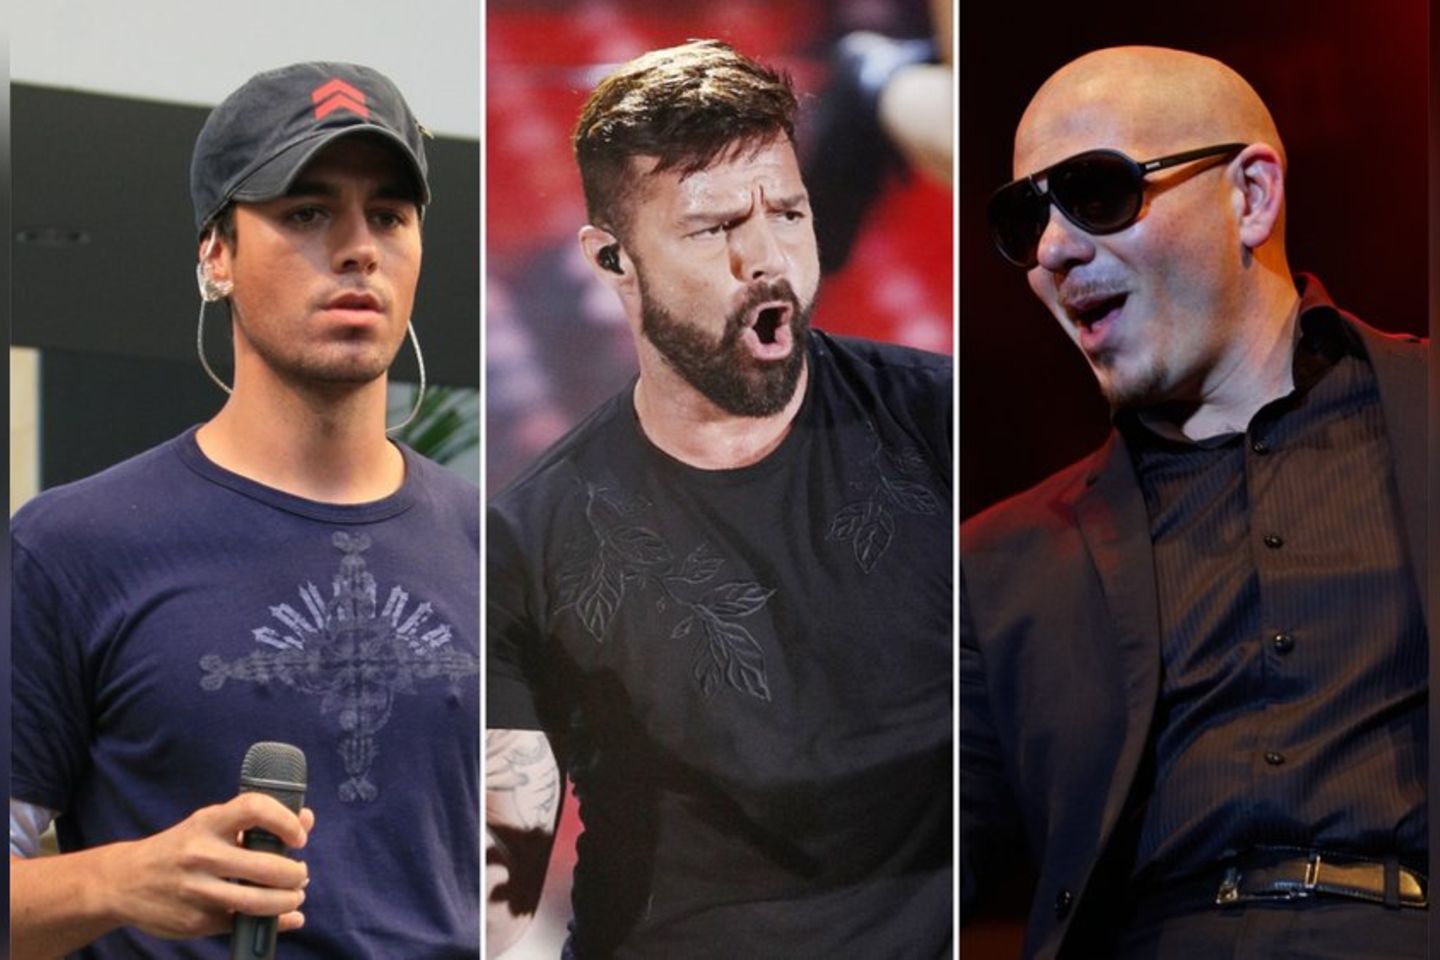 Enrique Iglesias, Ricky Martin und Pitbull gehen als Trio auf Tour